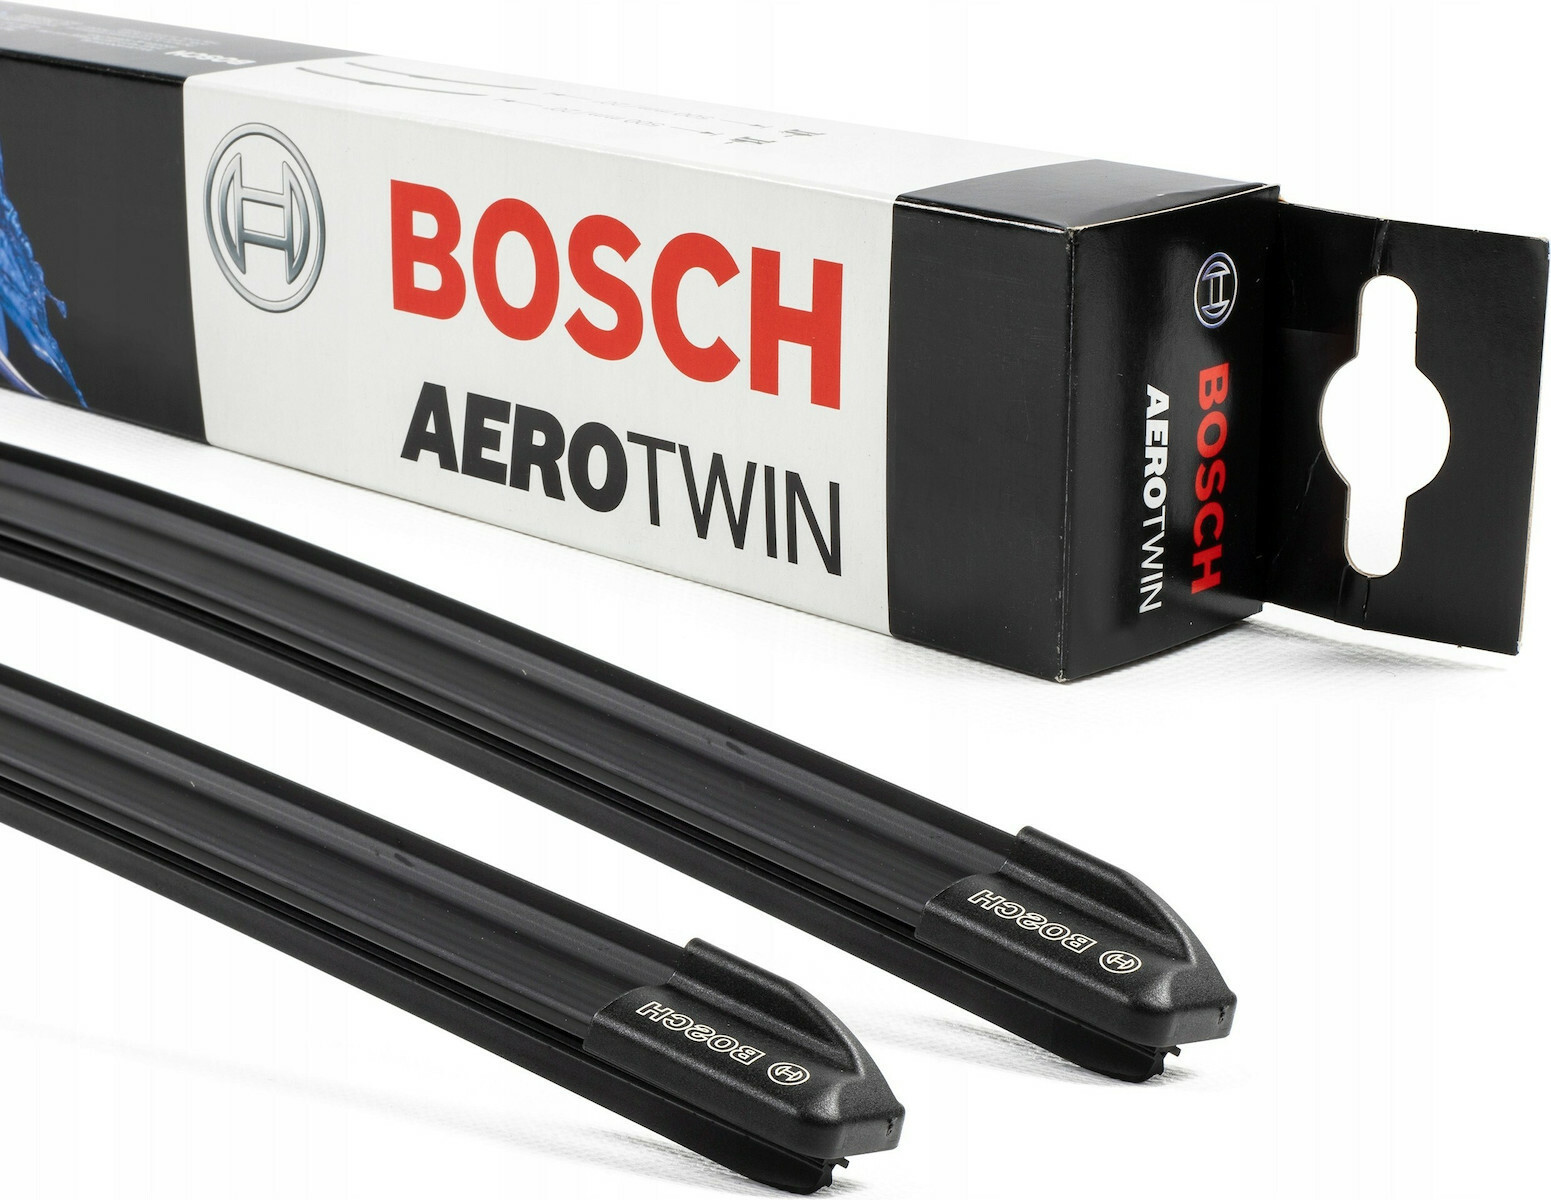 ᐅ Bosch Aero Twin AM 462 S Scheibenwischer